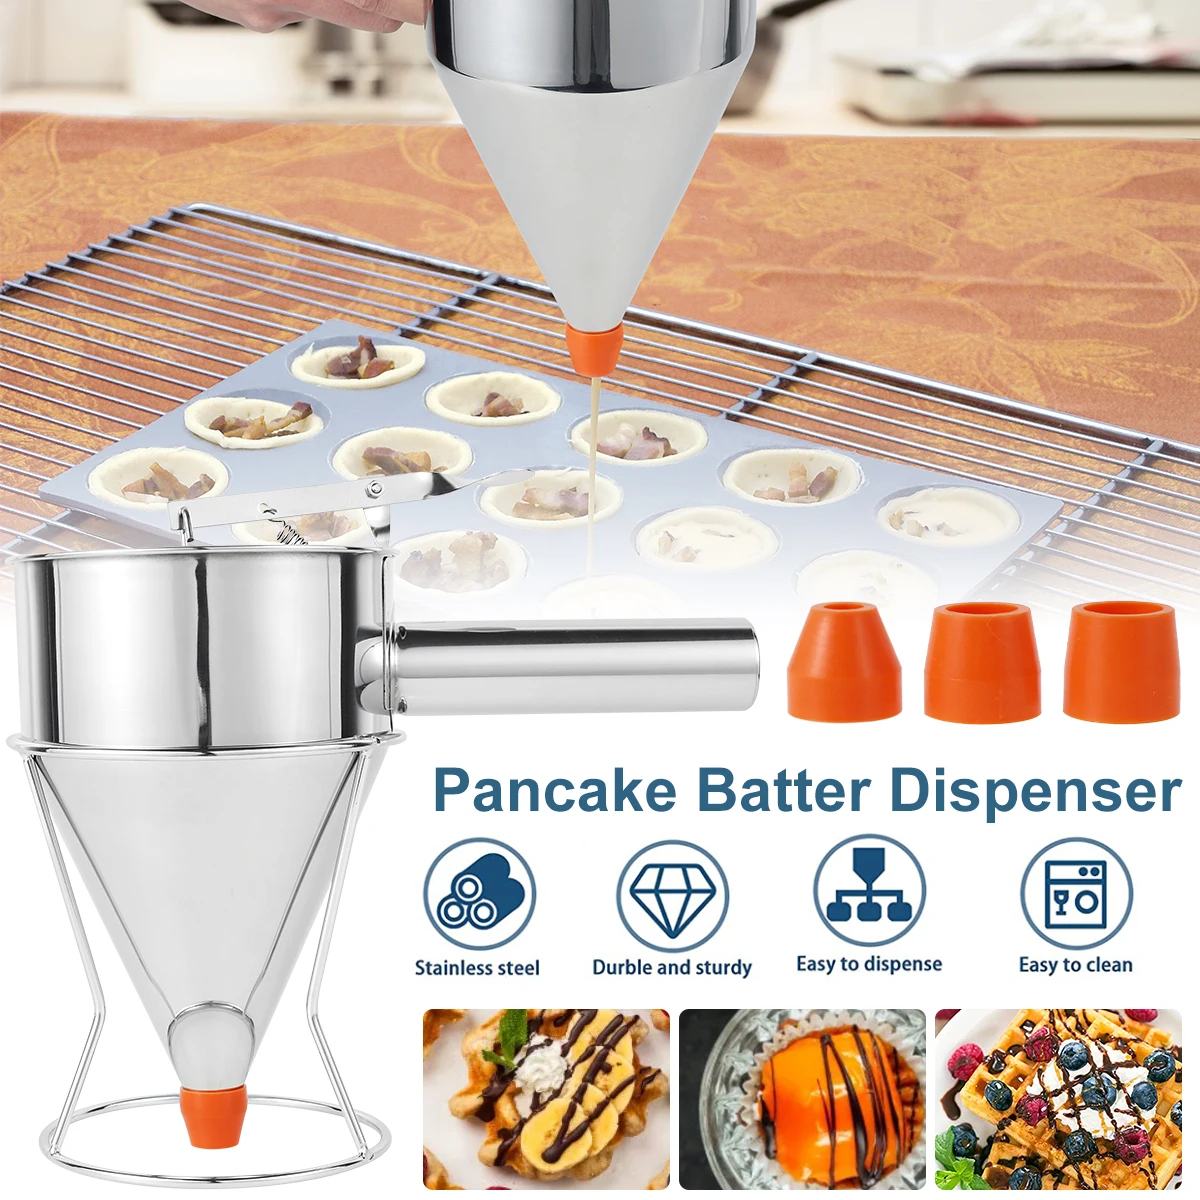 https://ae01.alicdn.com/kf/Sb8138adbedc74f64bd22173b280117dbO/Pancake-Batter-Dispenser-Funnel-Cake-Dispenser-Stainless-Steel-Batter-Dispenser-Multi-Caliber-Baking-Tool-Cake-Decorating.jpg